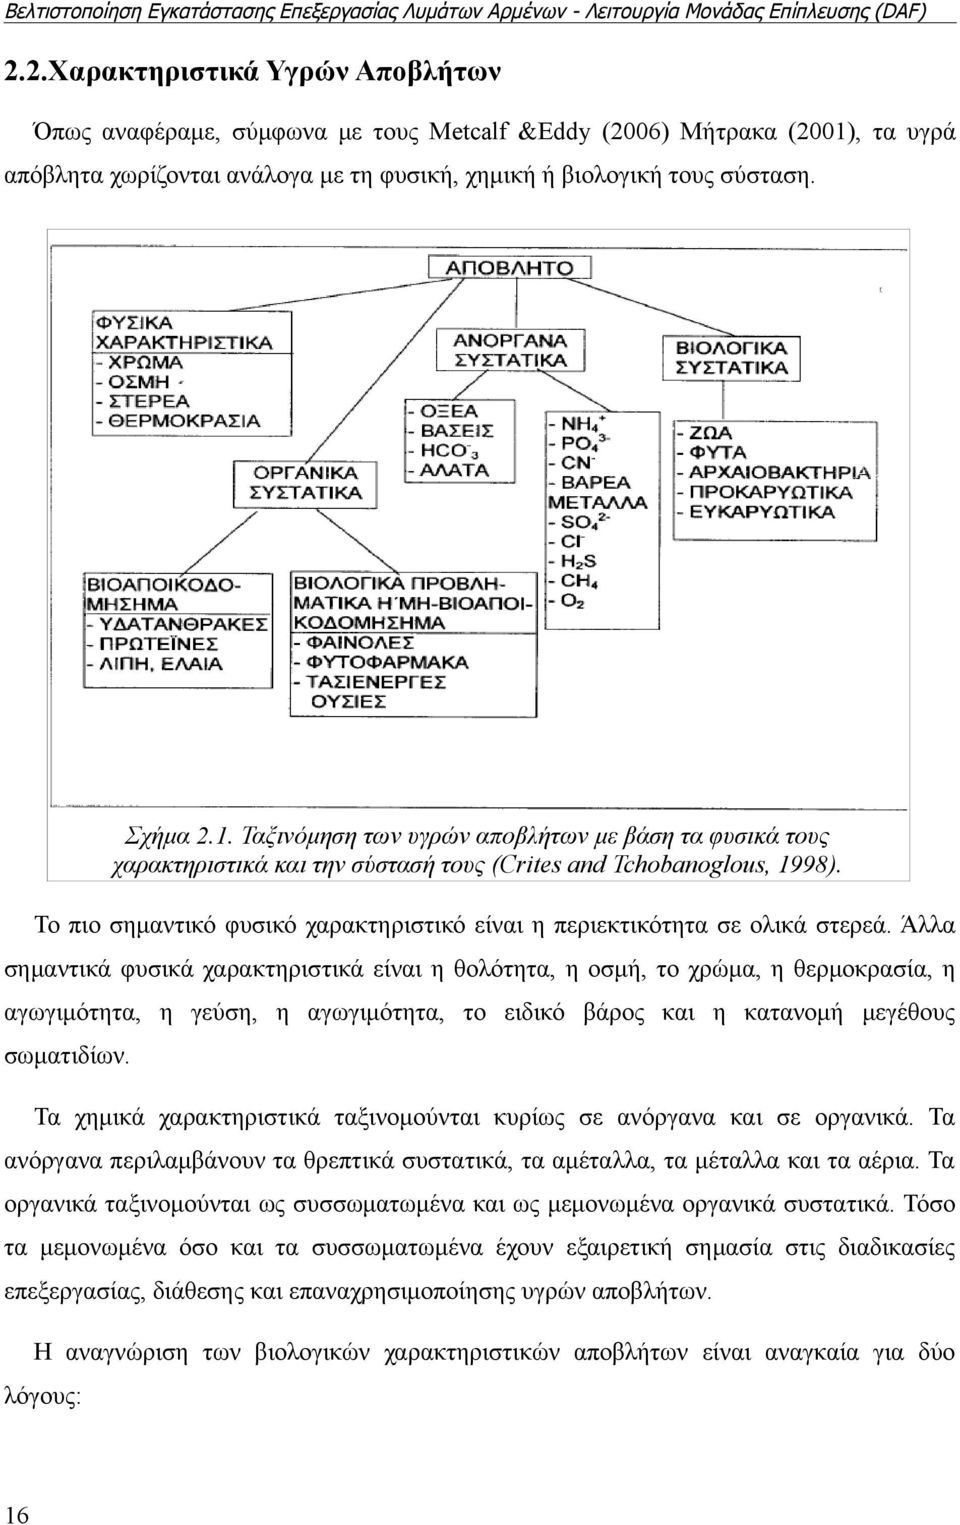 Ταξινόμηση των υγρών αποβλήτων με βάση τα φυσικά τους χαρακτηριστικά και την σύστασή τους (Crites and Tchobanoglous, 1998).